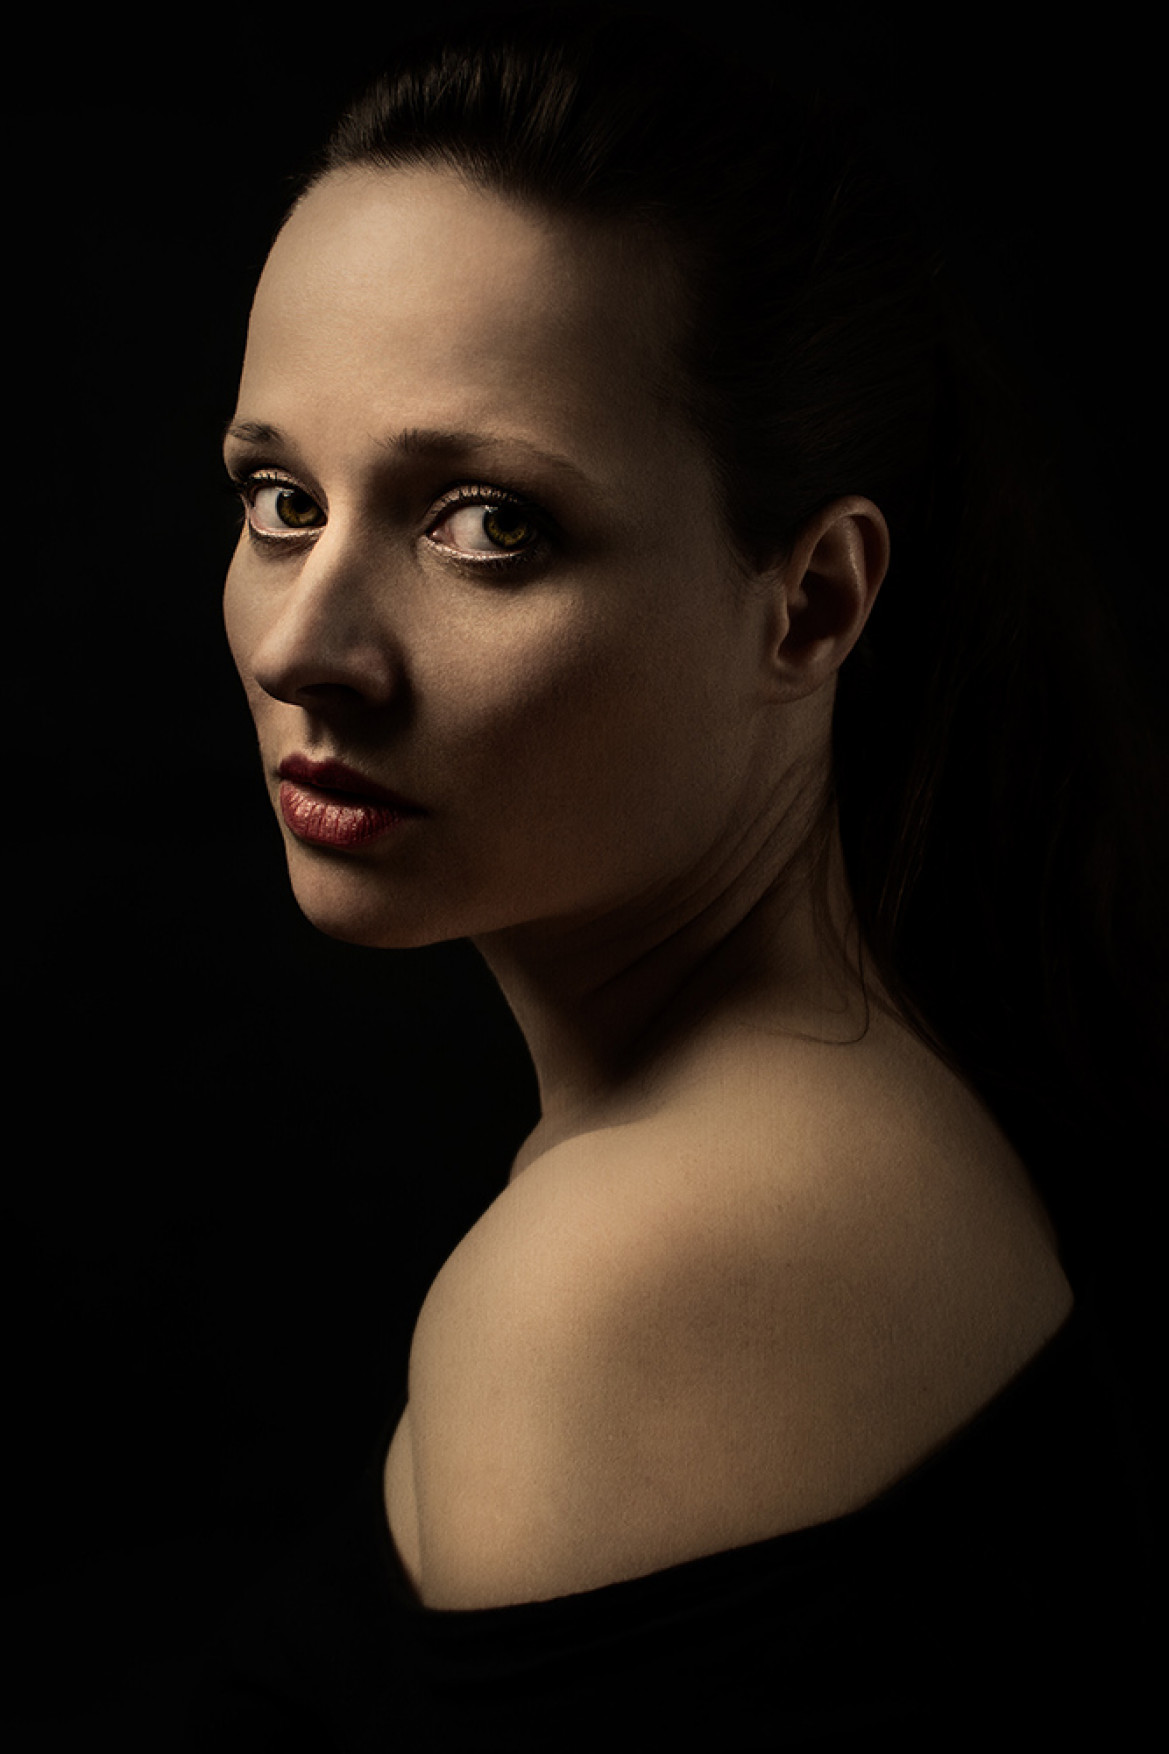 fot. Katarzyna Wołyniak, nominacja w kat. Portrait, "Girl Without a Pearl"